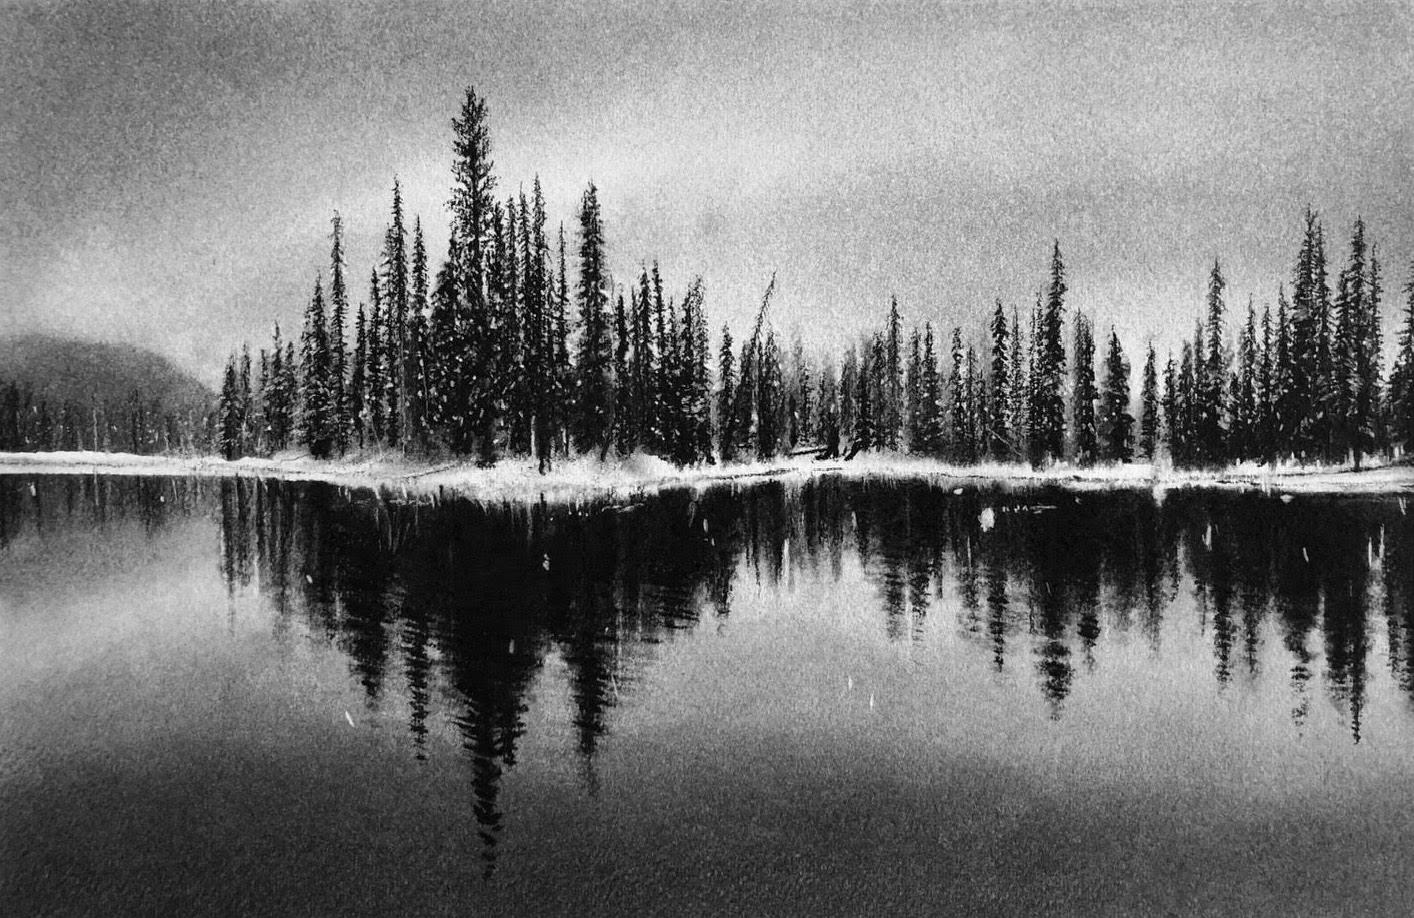 Reflections d'hiver, dessin au fusain noir et blanc d'arbres et de lac